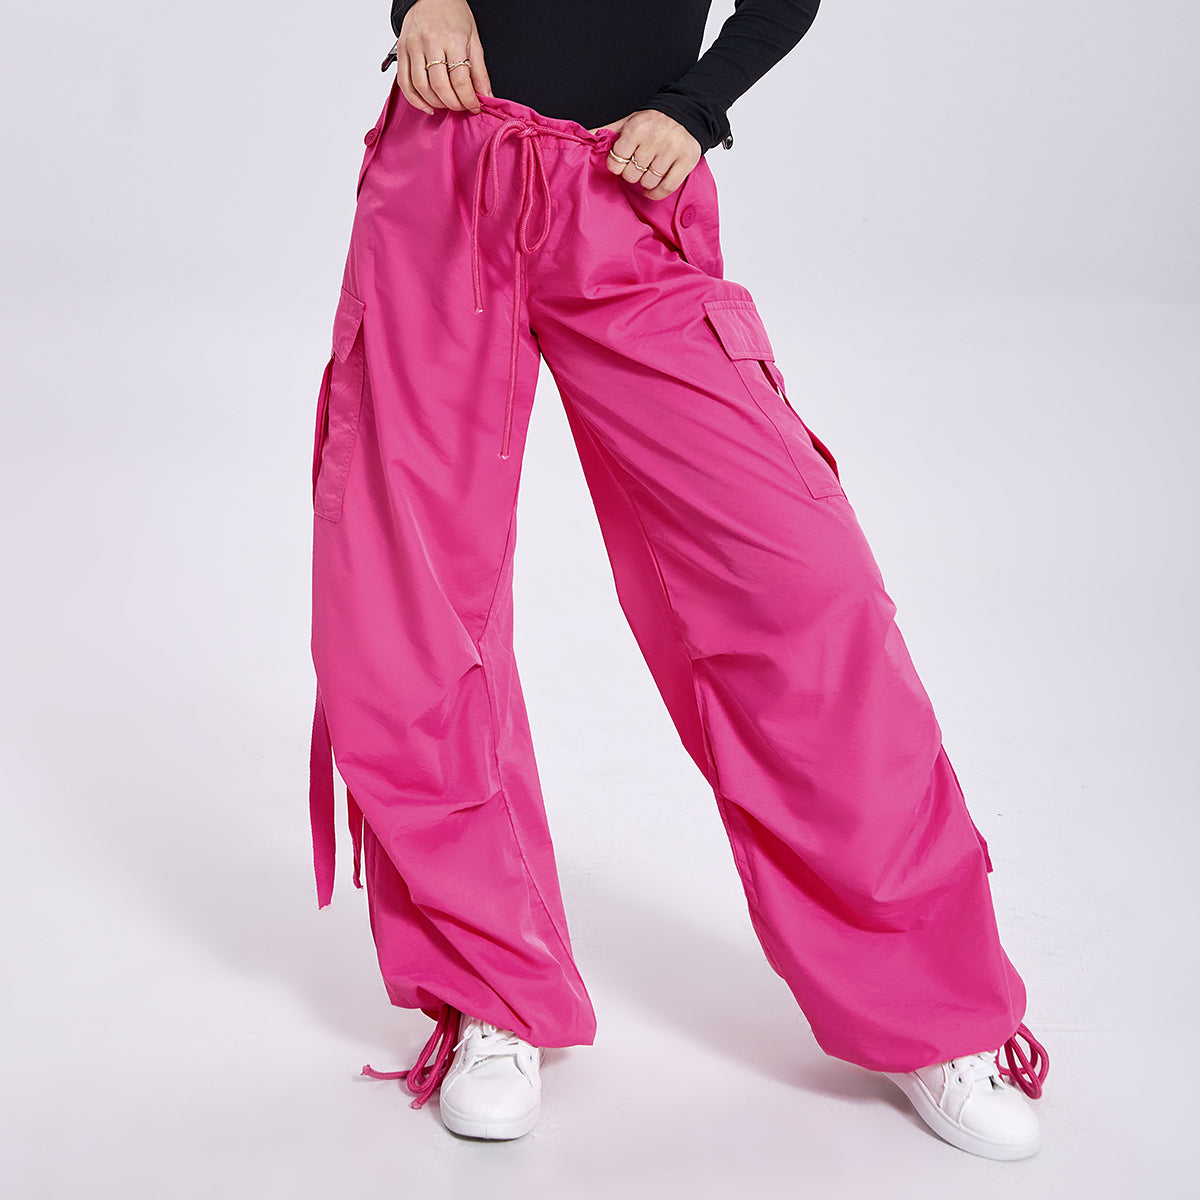 Pink Loose Drawstring Pants